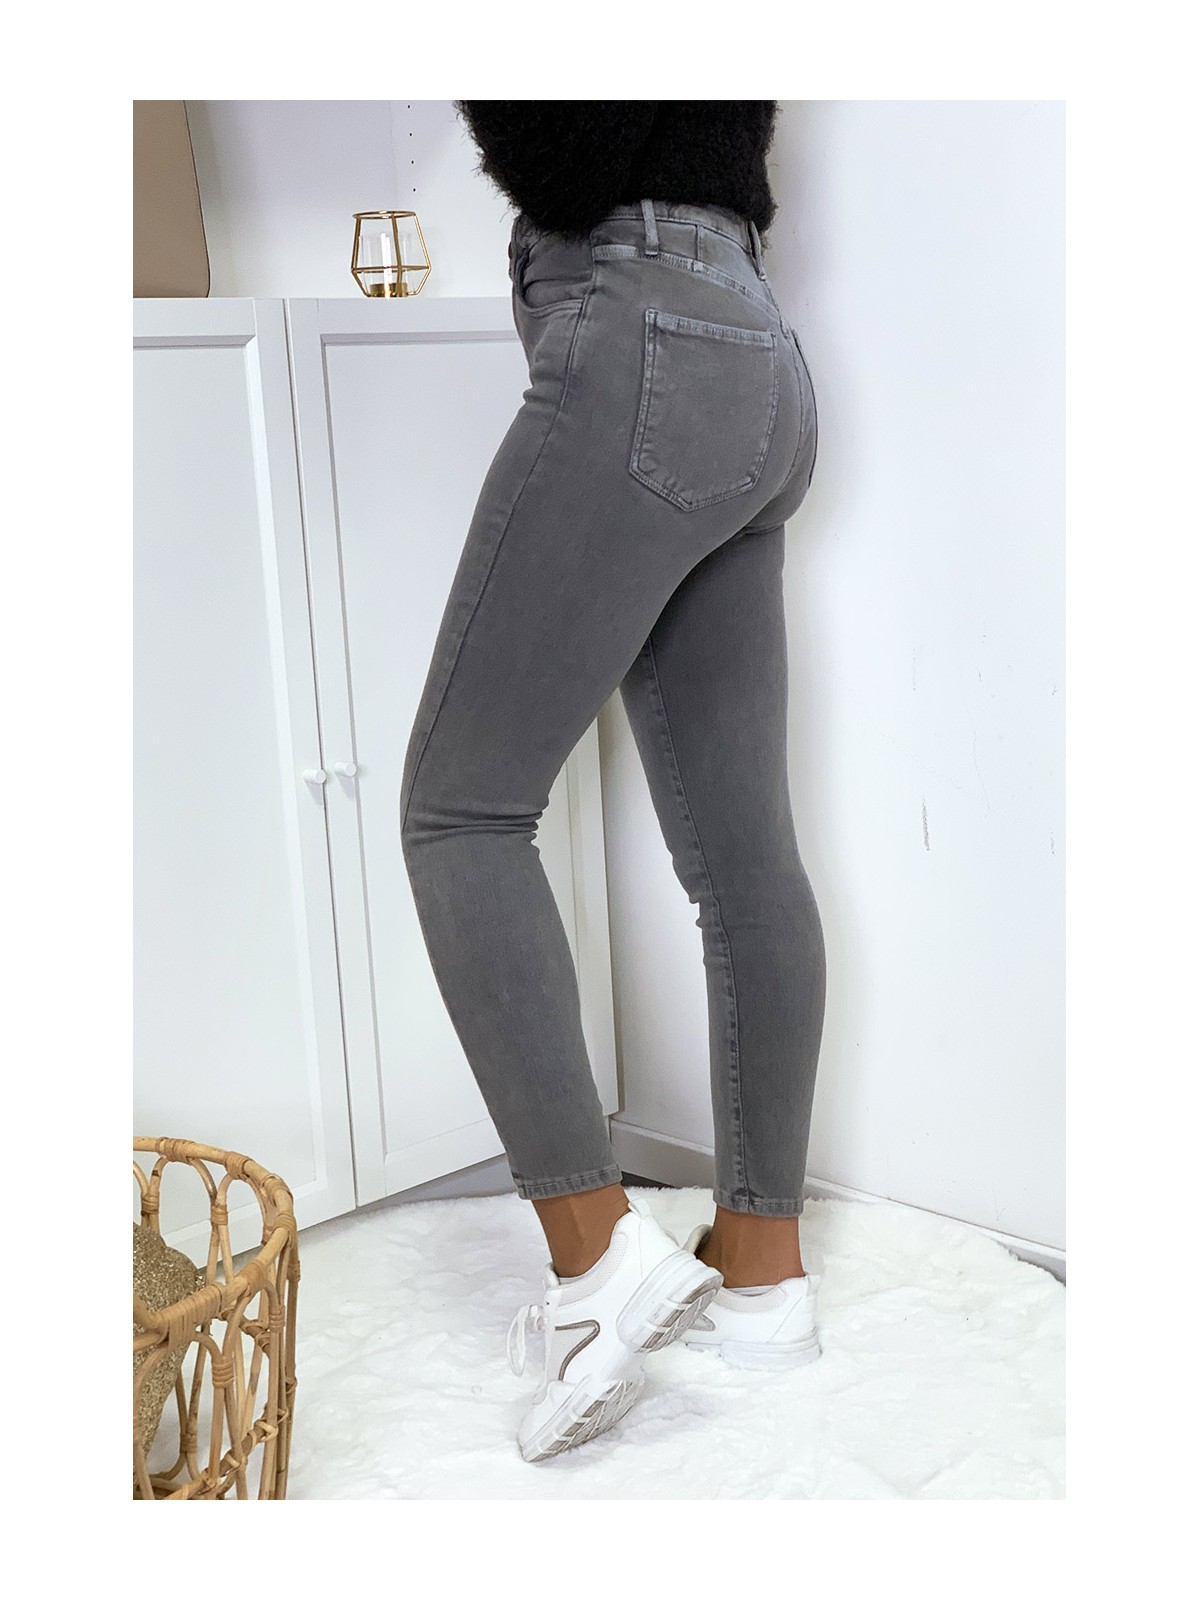 Jeans gris en taille haute très extensible avec poches - 5